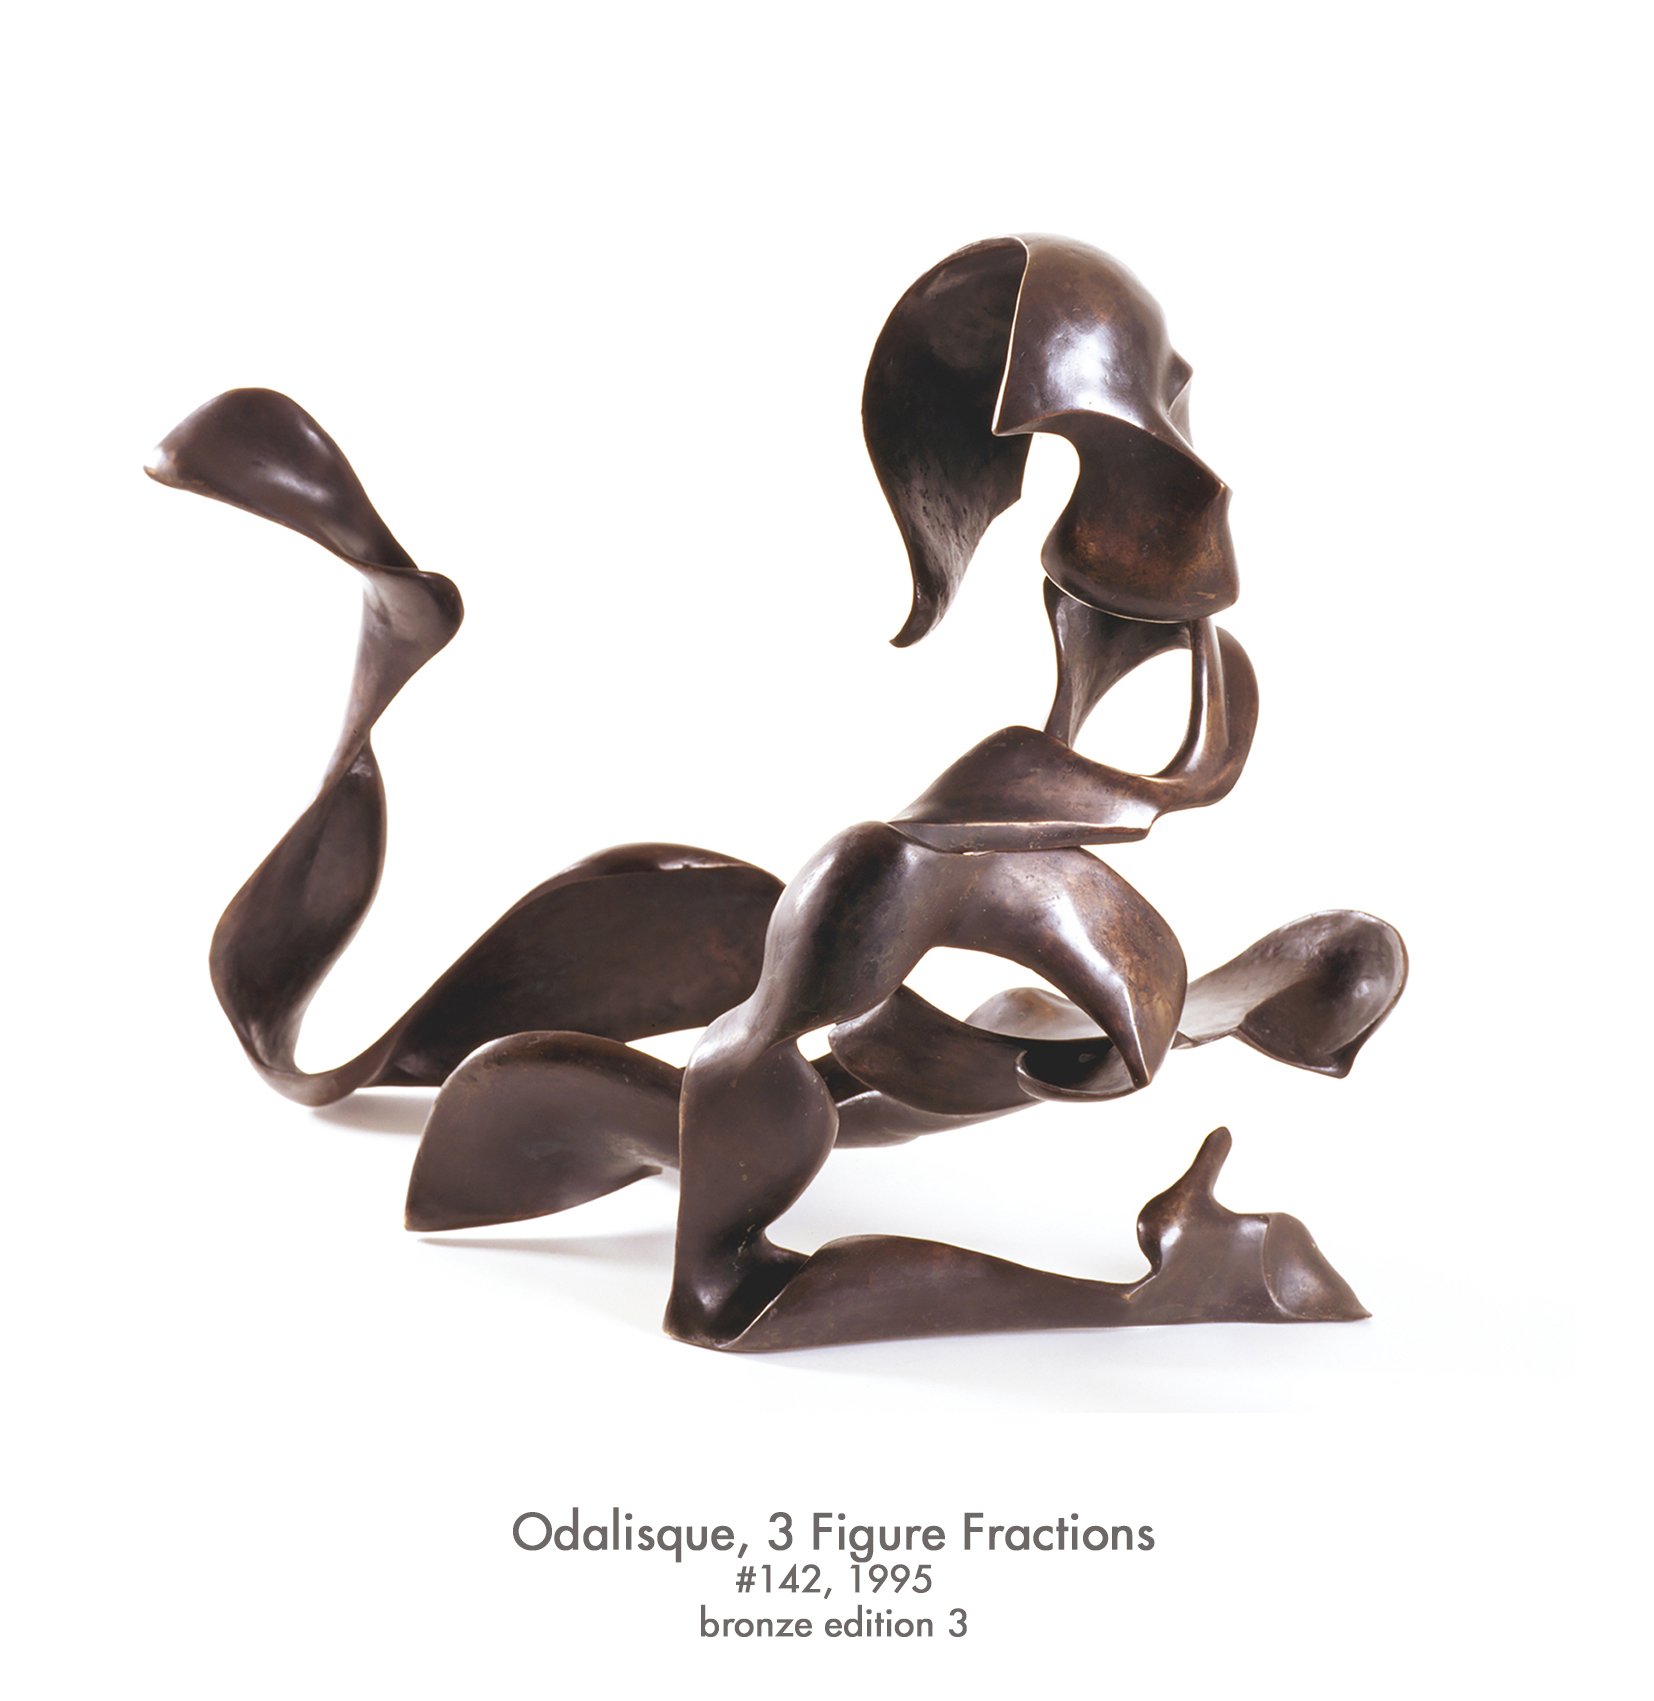 Odalisque 3 Figure Fractions, 1995, bronze, #142